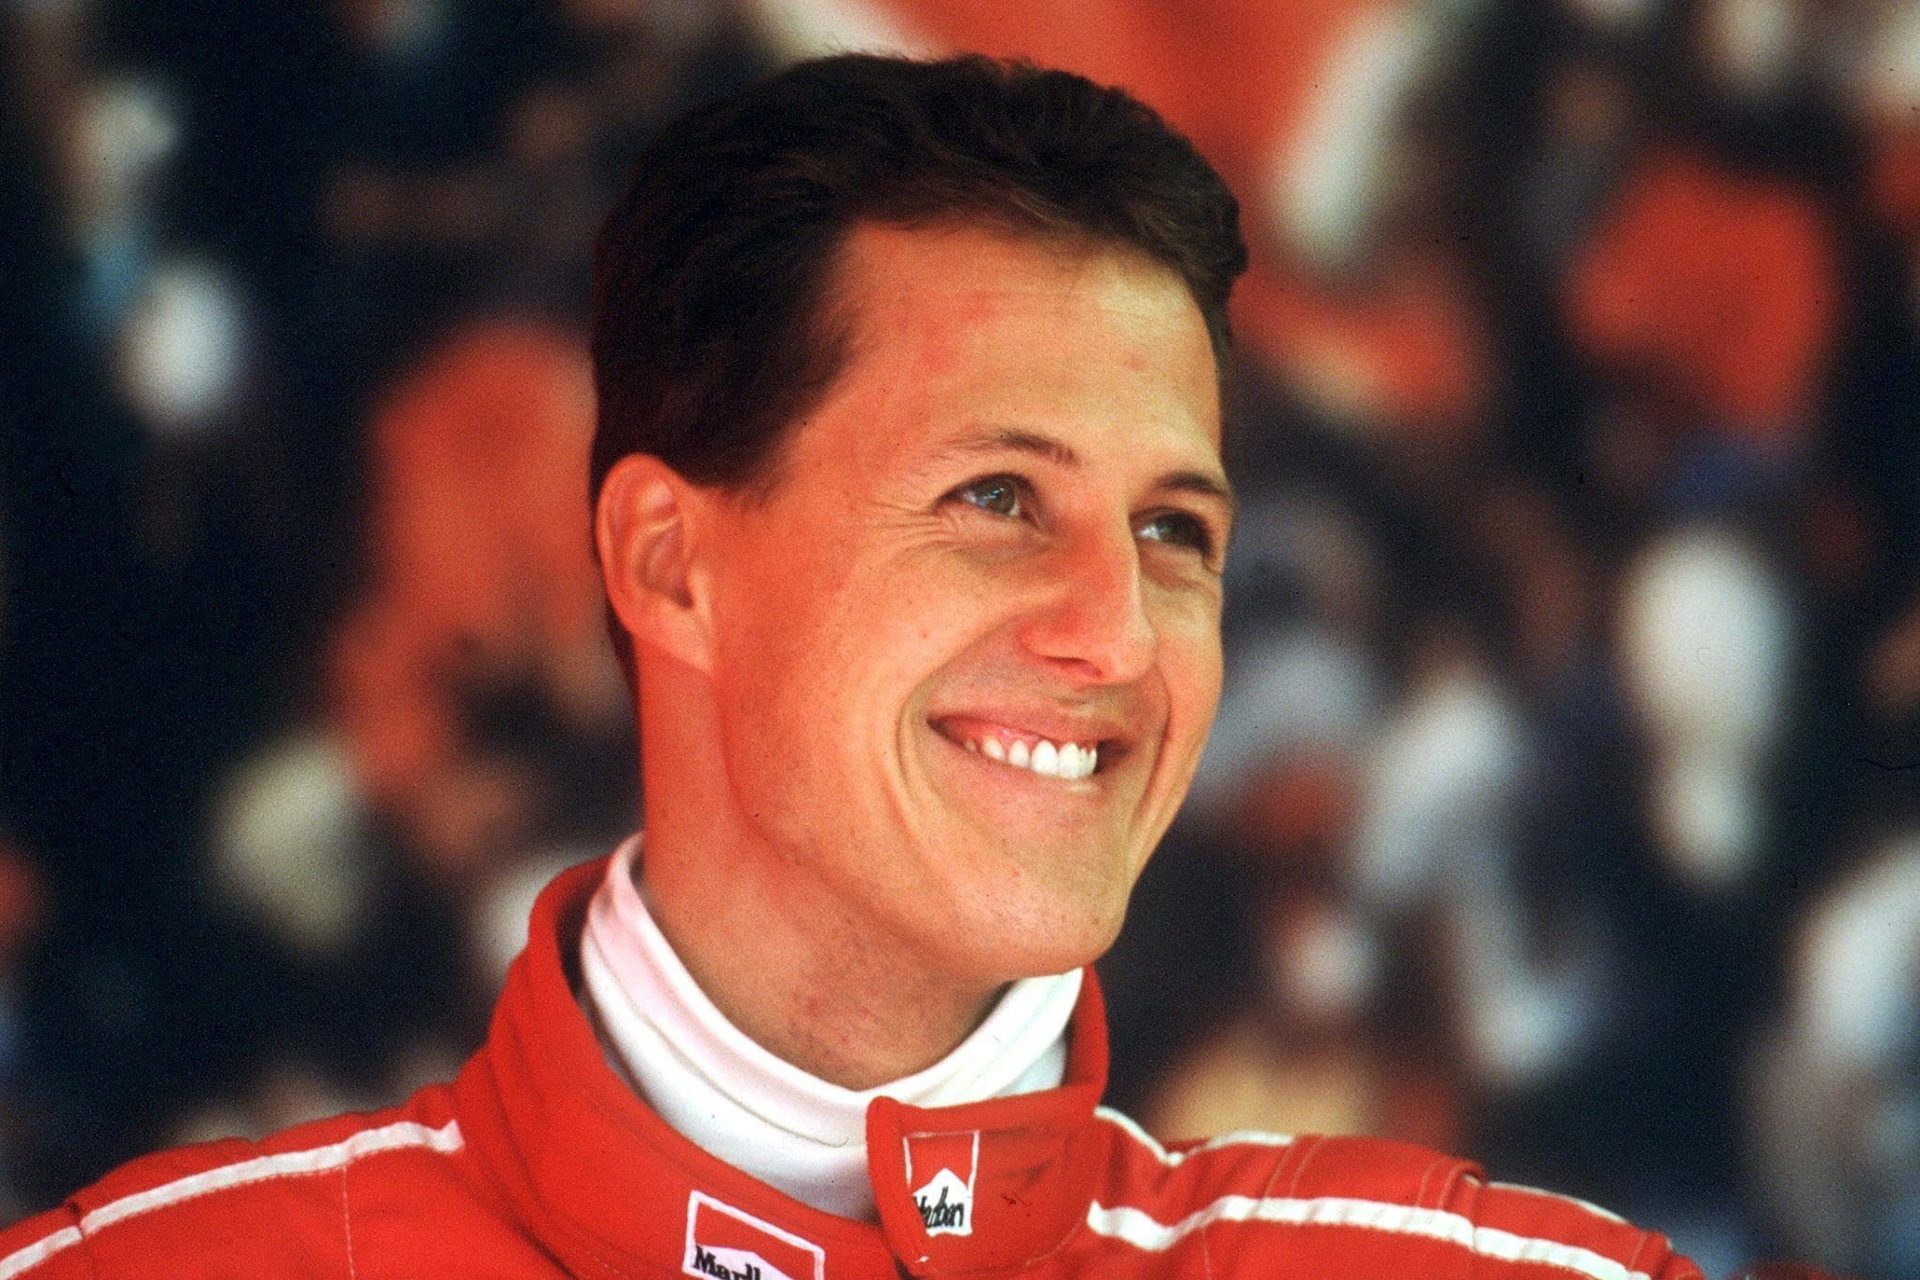 Com'è cambiato Ralf Schumacher dal terribile incidente di suo fratello Michael